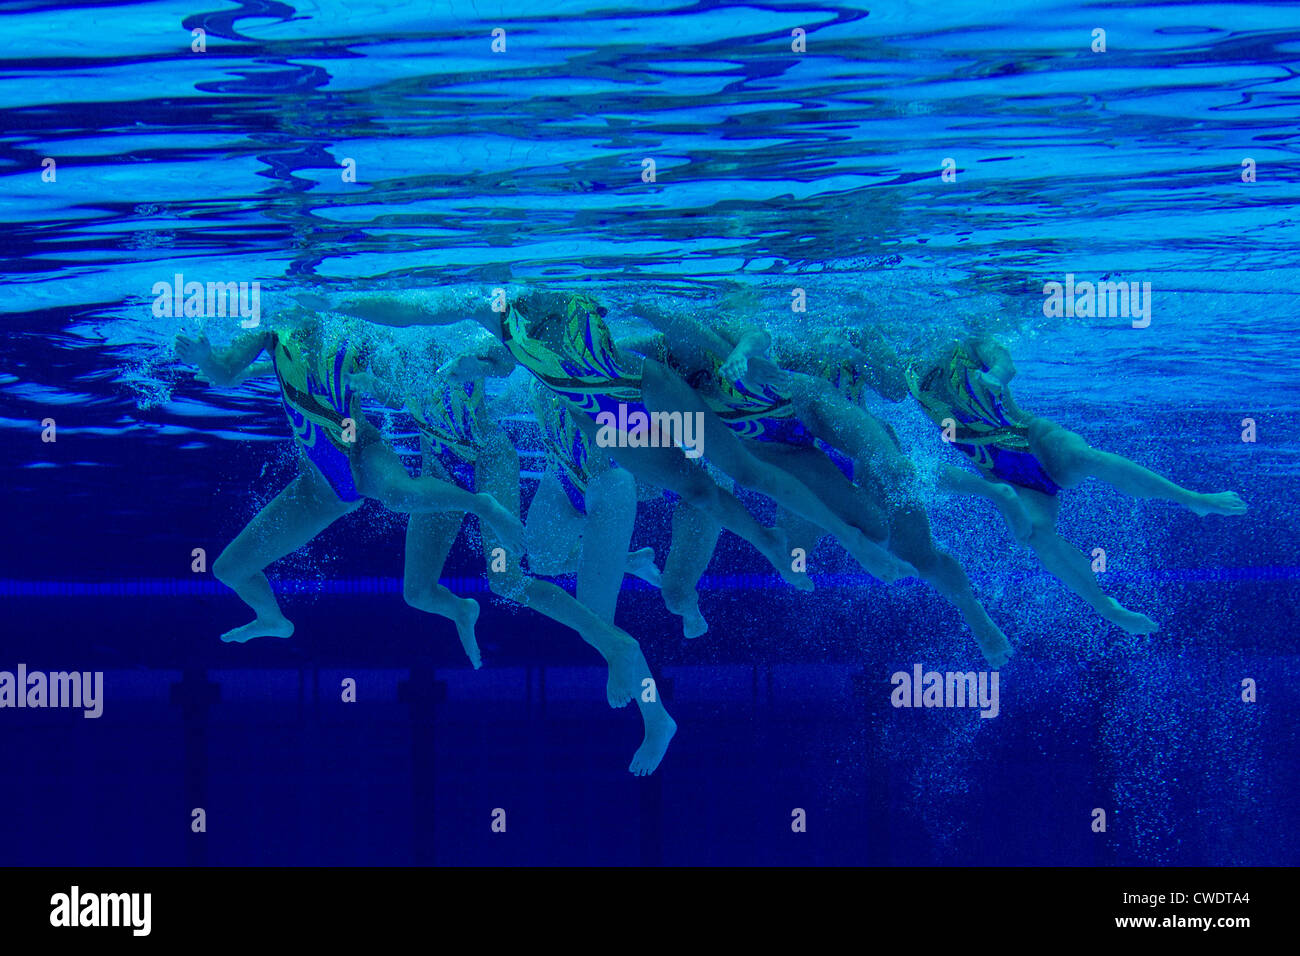 Vista submarina del equipo de natación sincronizada en el verano de los Juegos Olímpicos de Londres 2012 Foto de stock